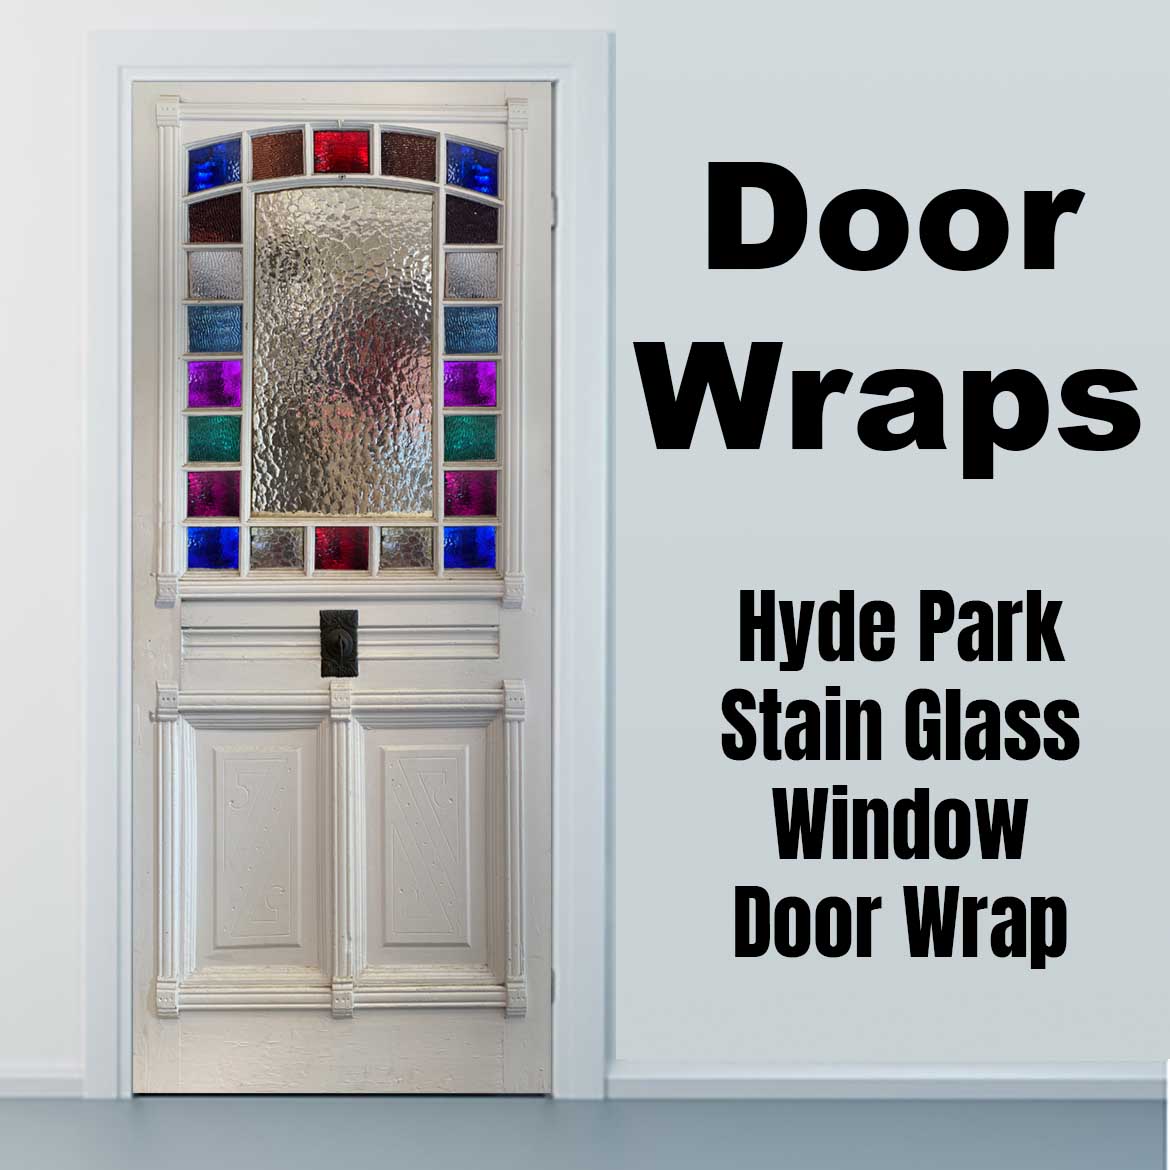 Hyde park Stain Glass window Door Wrap